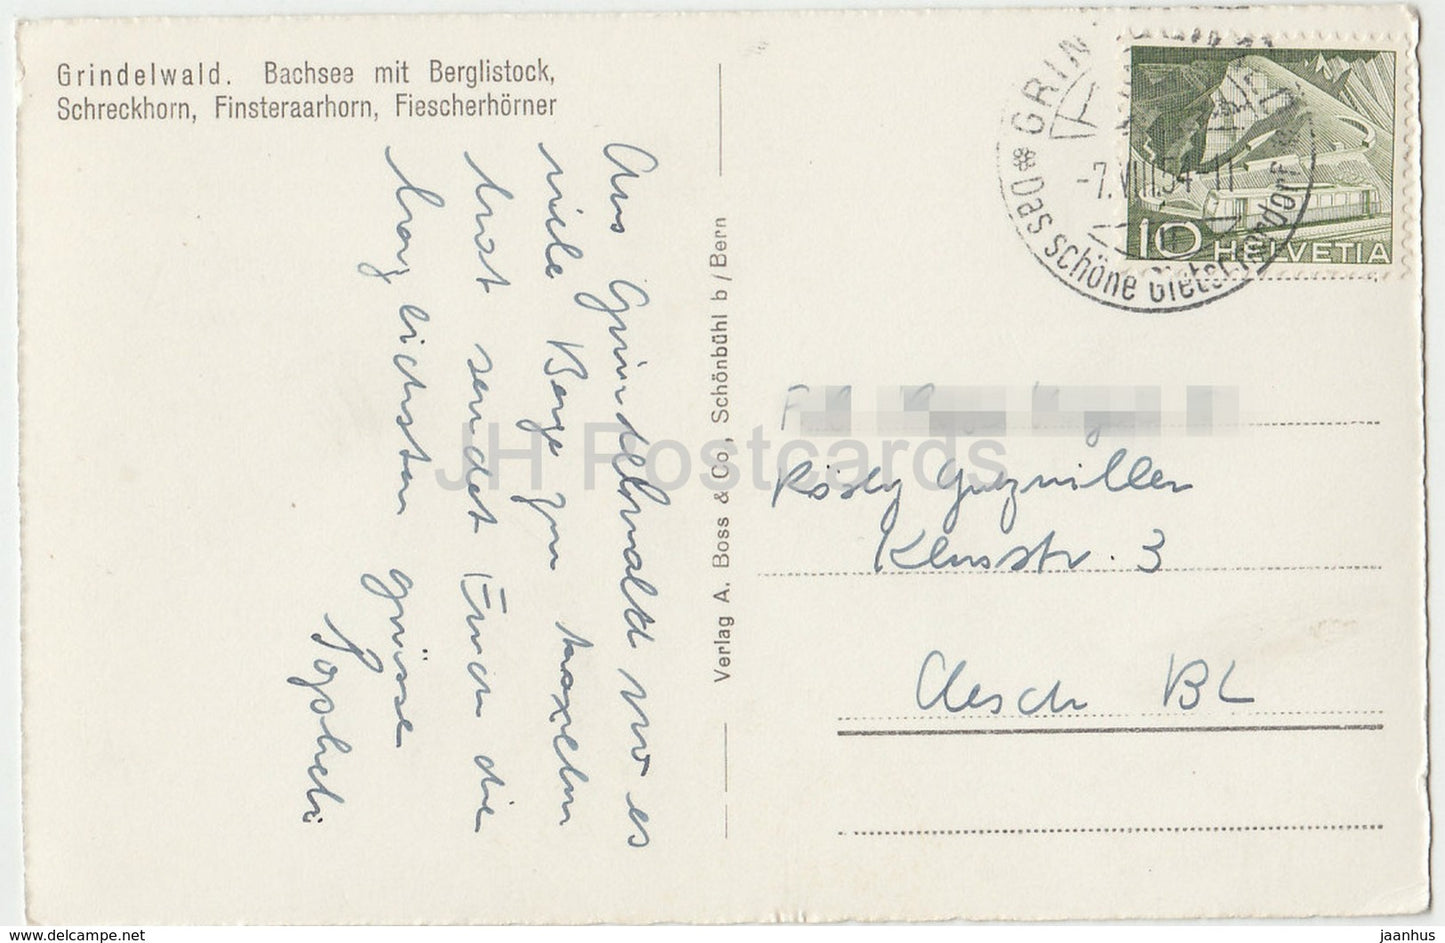 Grindelwald - Bachsee mit Berglistock - Schreckhorn - Finsteraarhorn - Fiescherhorner - 6130 - Switzerland - 1954 - used